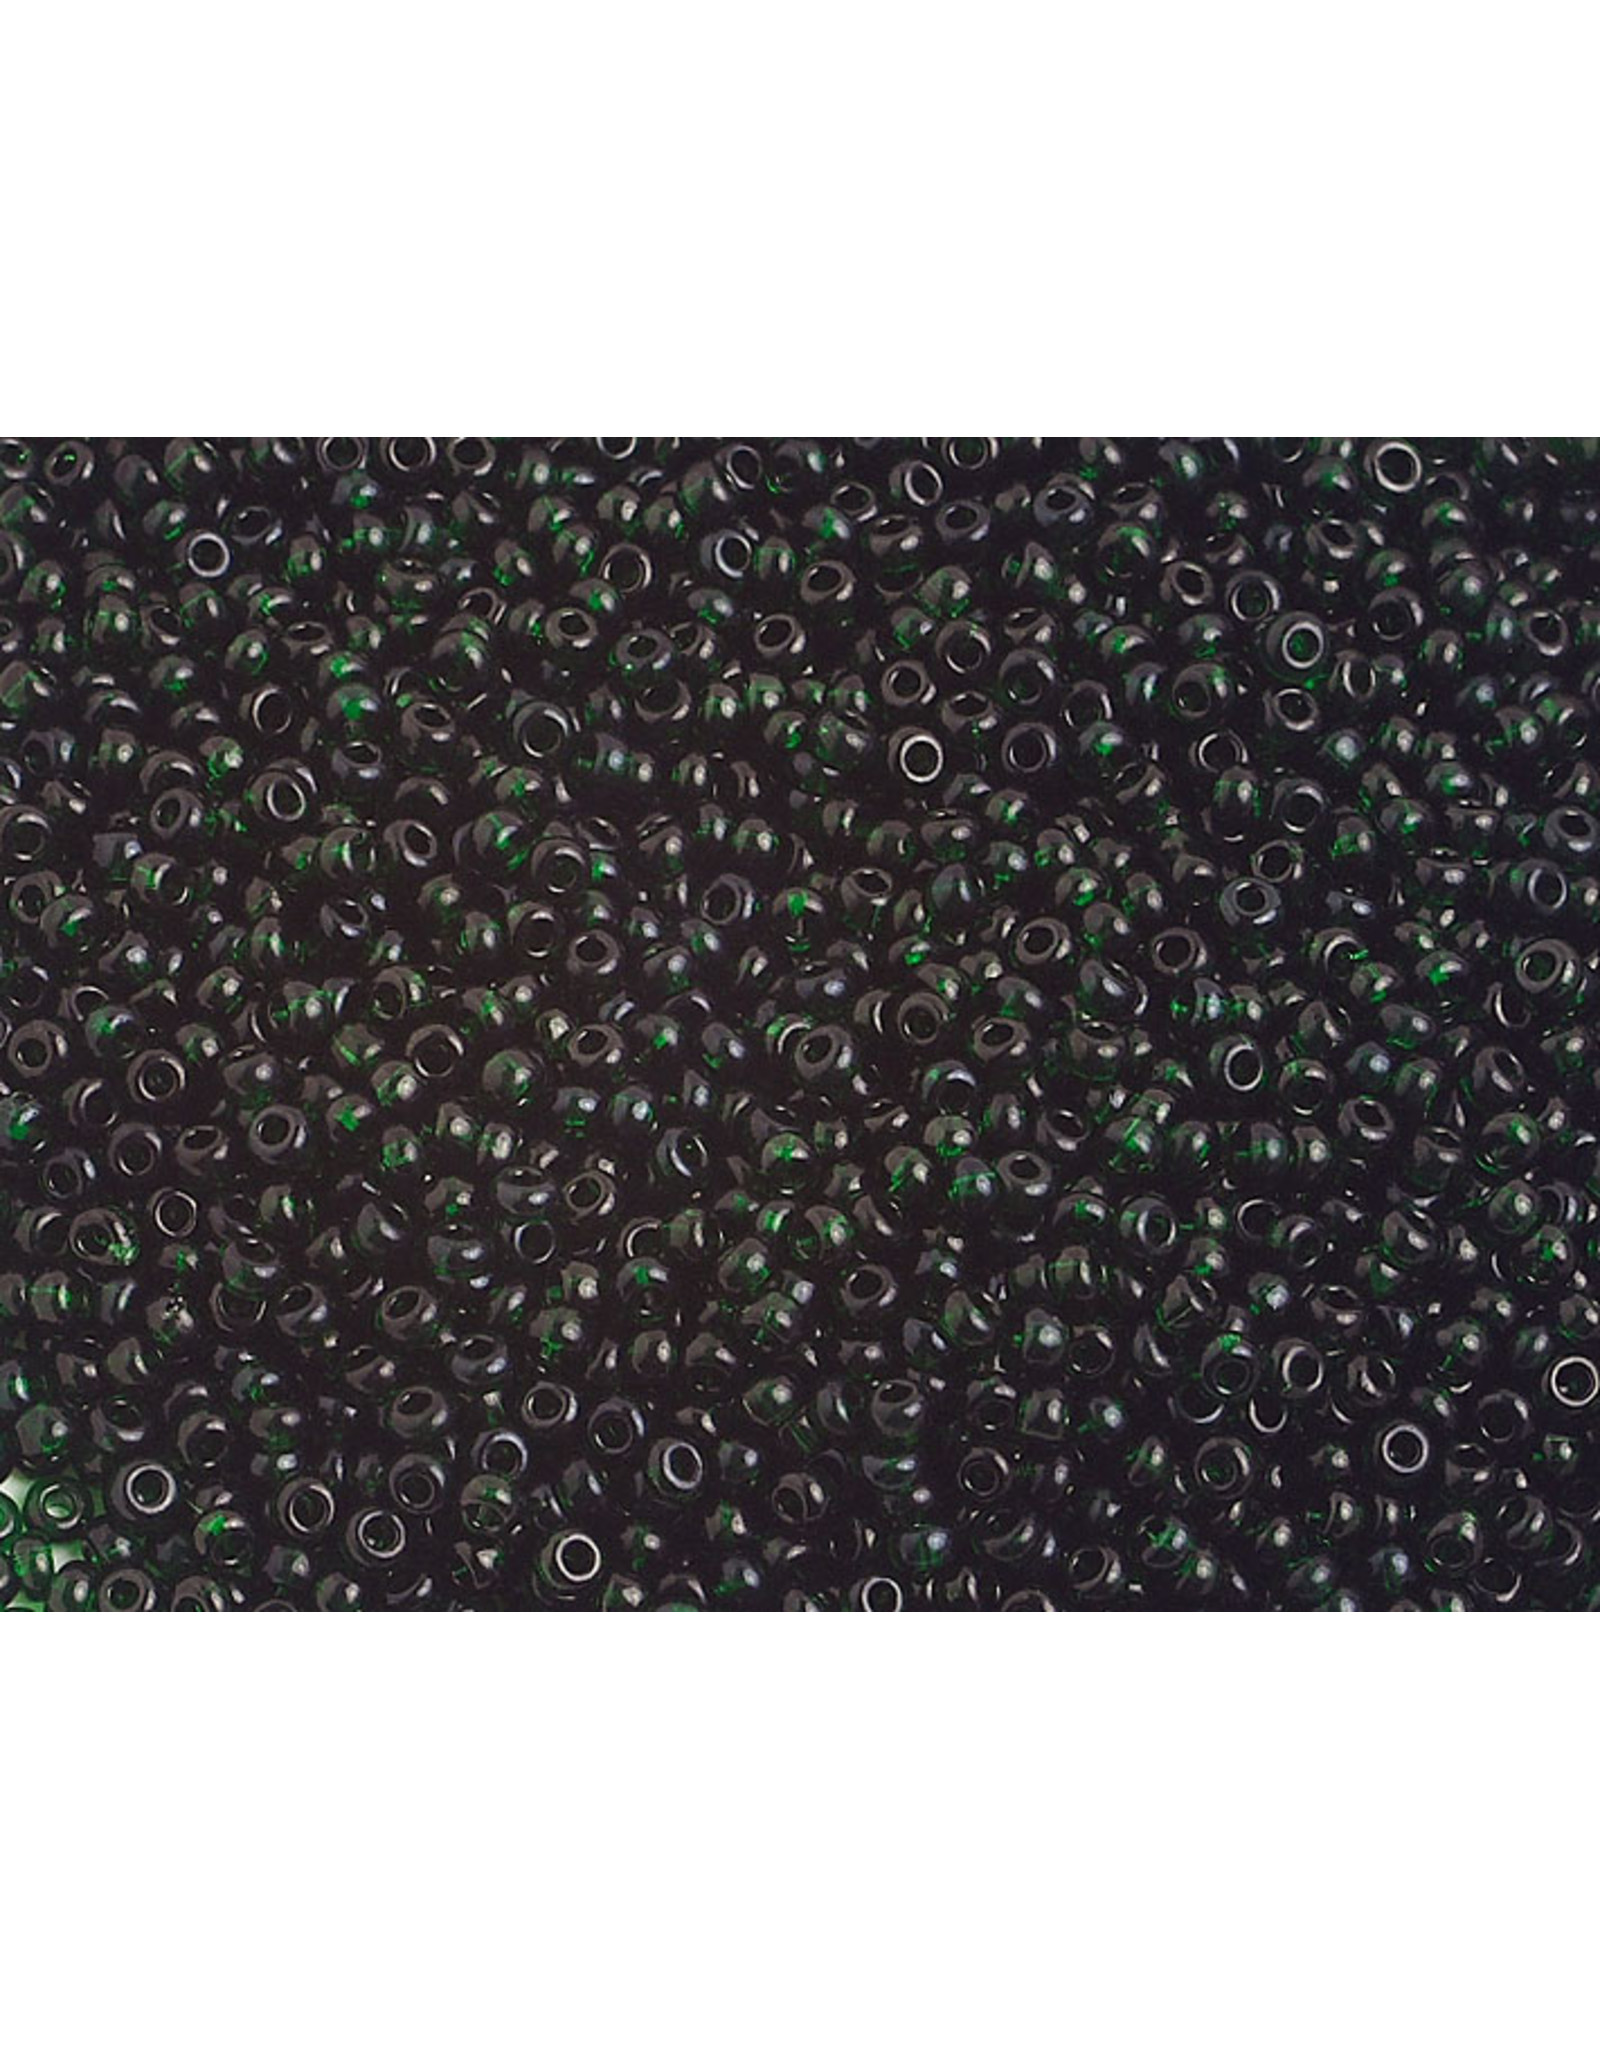 Czech 1176B 10  Seed 125g Transparent Dark Green